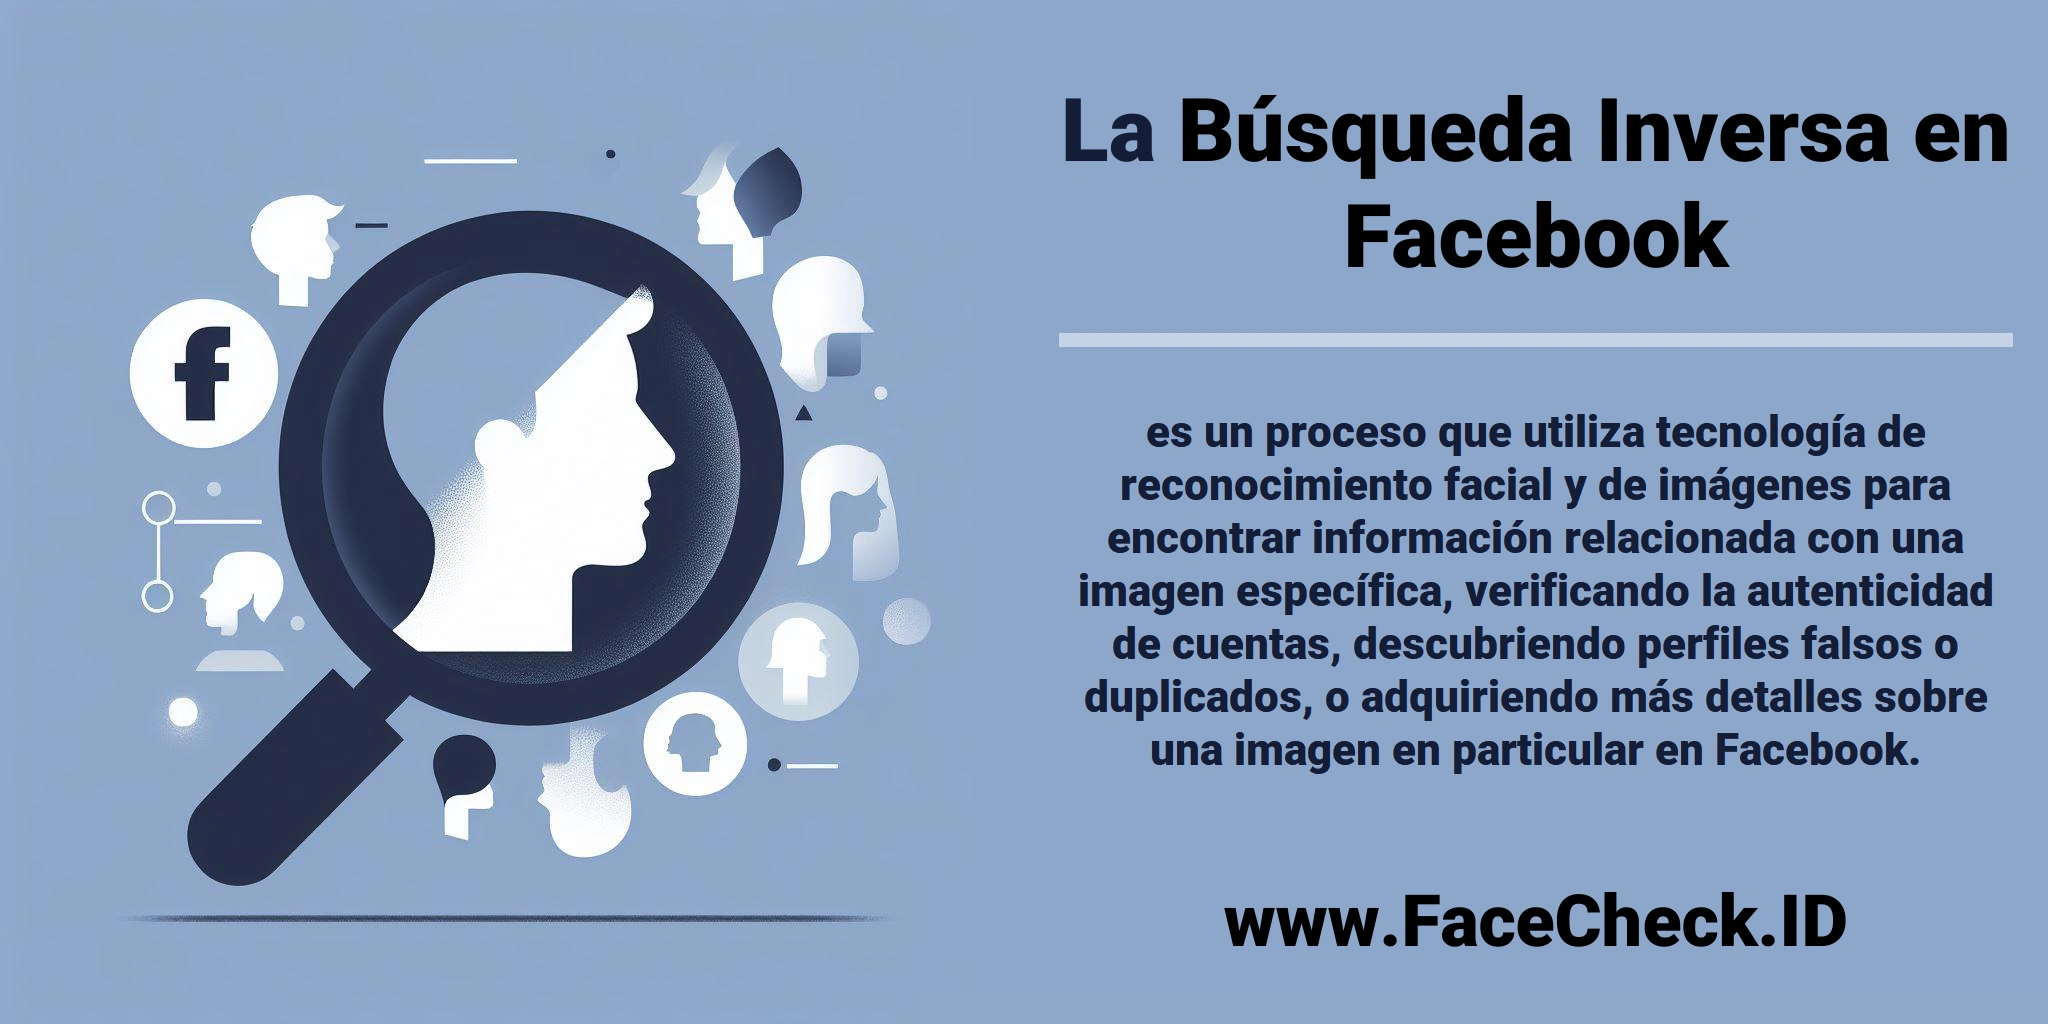 La <b>Búsqueda Inversa en Facebook</b> es un proceso que utiliza tecnología de reconocimiento facial y de imágenes para encontrar información relacionada con una imagen específica, verificando la autenticidad de cuentas, descubriendo perfiles falsos o duplicados, o adquiriendo más detalles sobre una imagen en particular en Facebook.